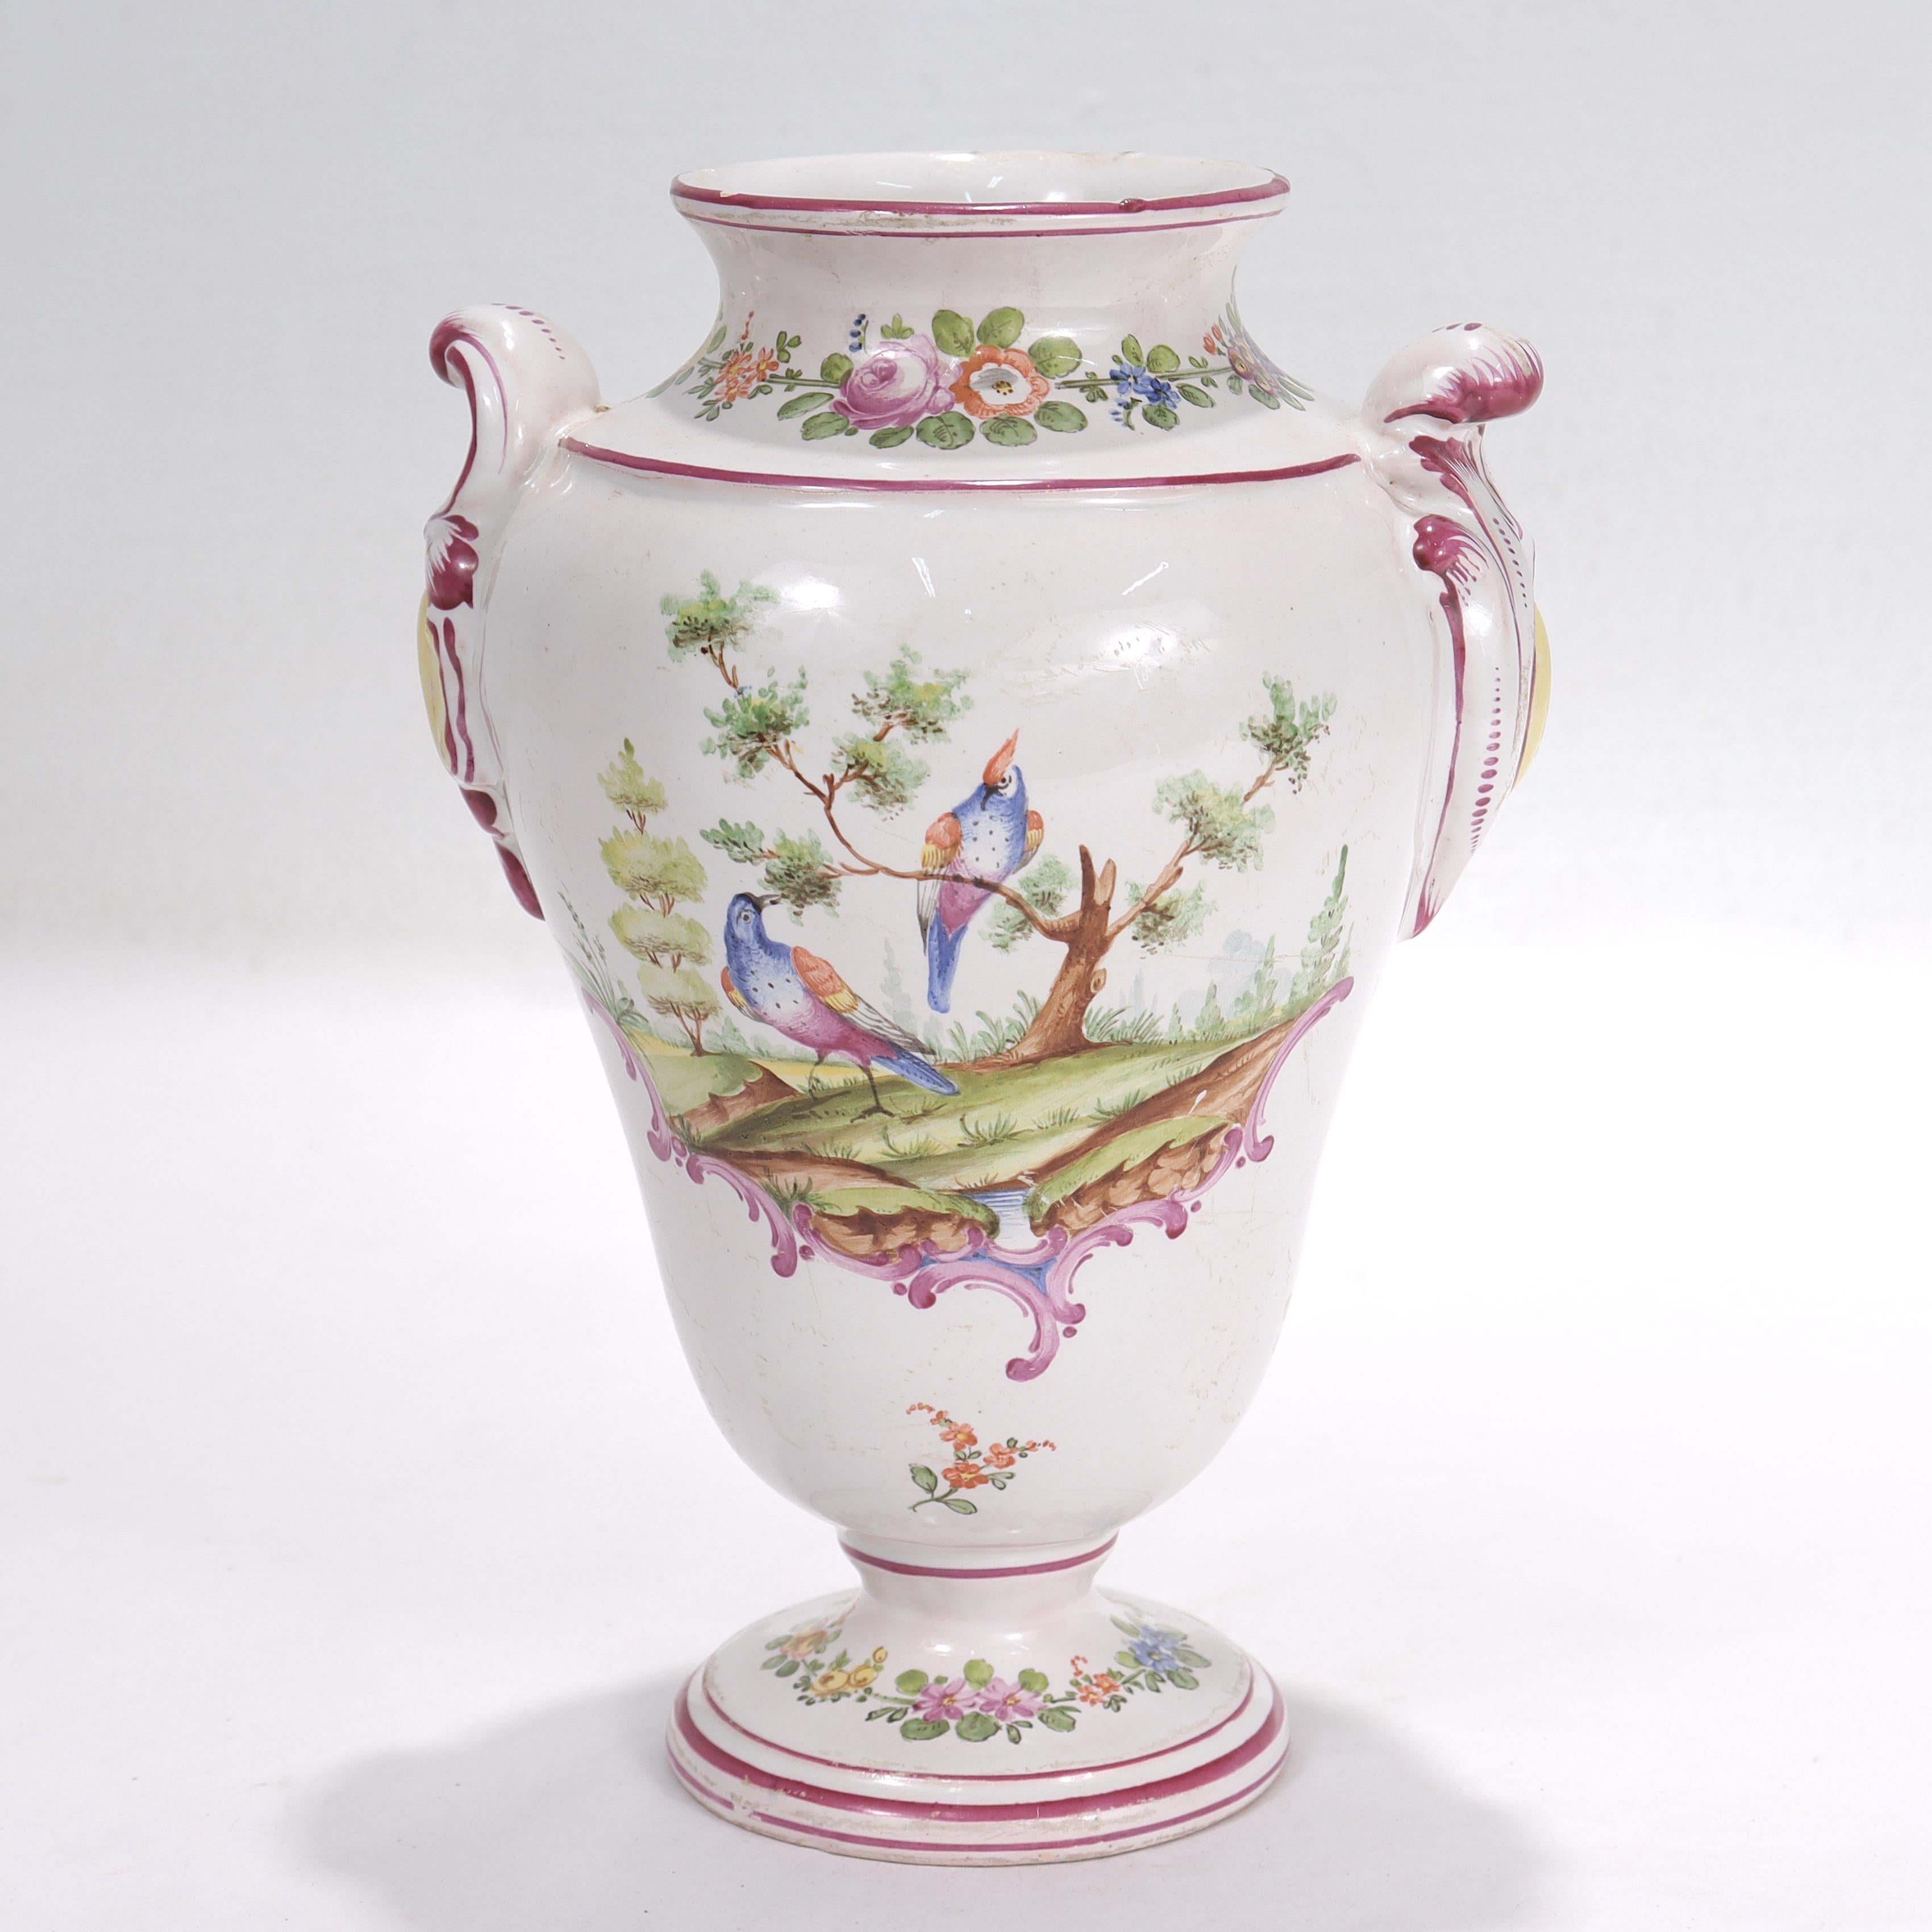 Eine schöne antike französische Fayence-Vase.

Von Aprey.

Dekoriert mit floralen Geräten und lila Akzenten mit einer Natur-Szene von zwei Vögeln auf einer Seite.

Mit zwei Rocaillegriffen.

Einfach eine tolle Vase von Aprey!

Datum:
Spätes 18. oder